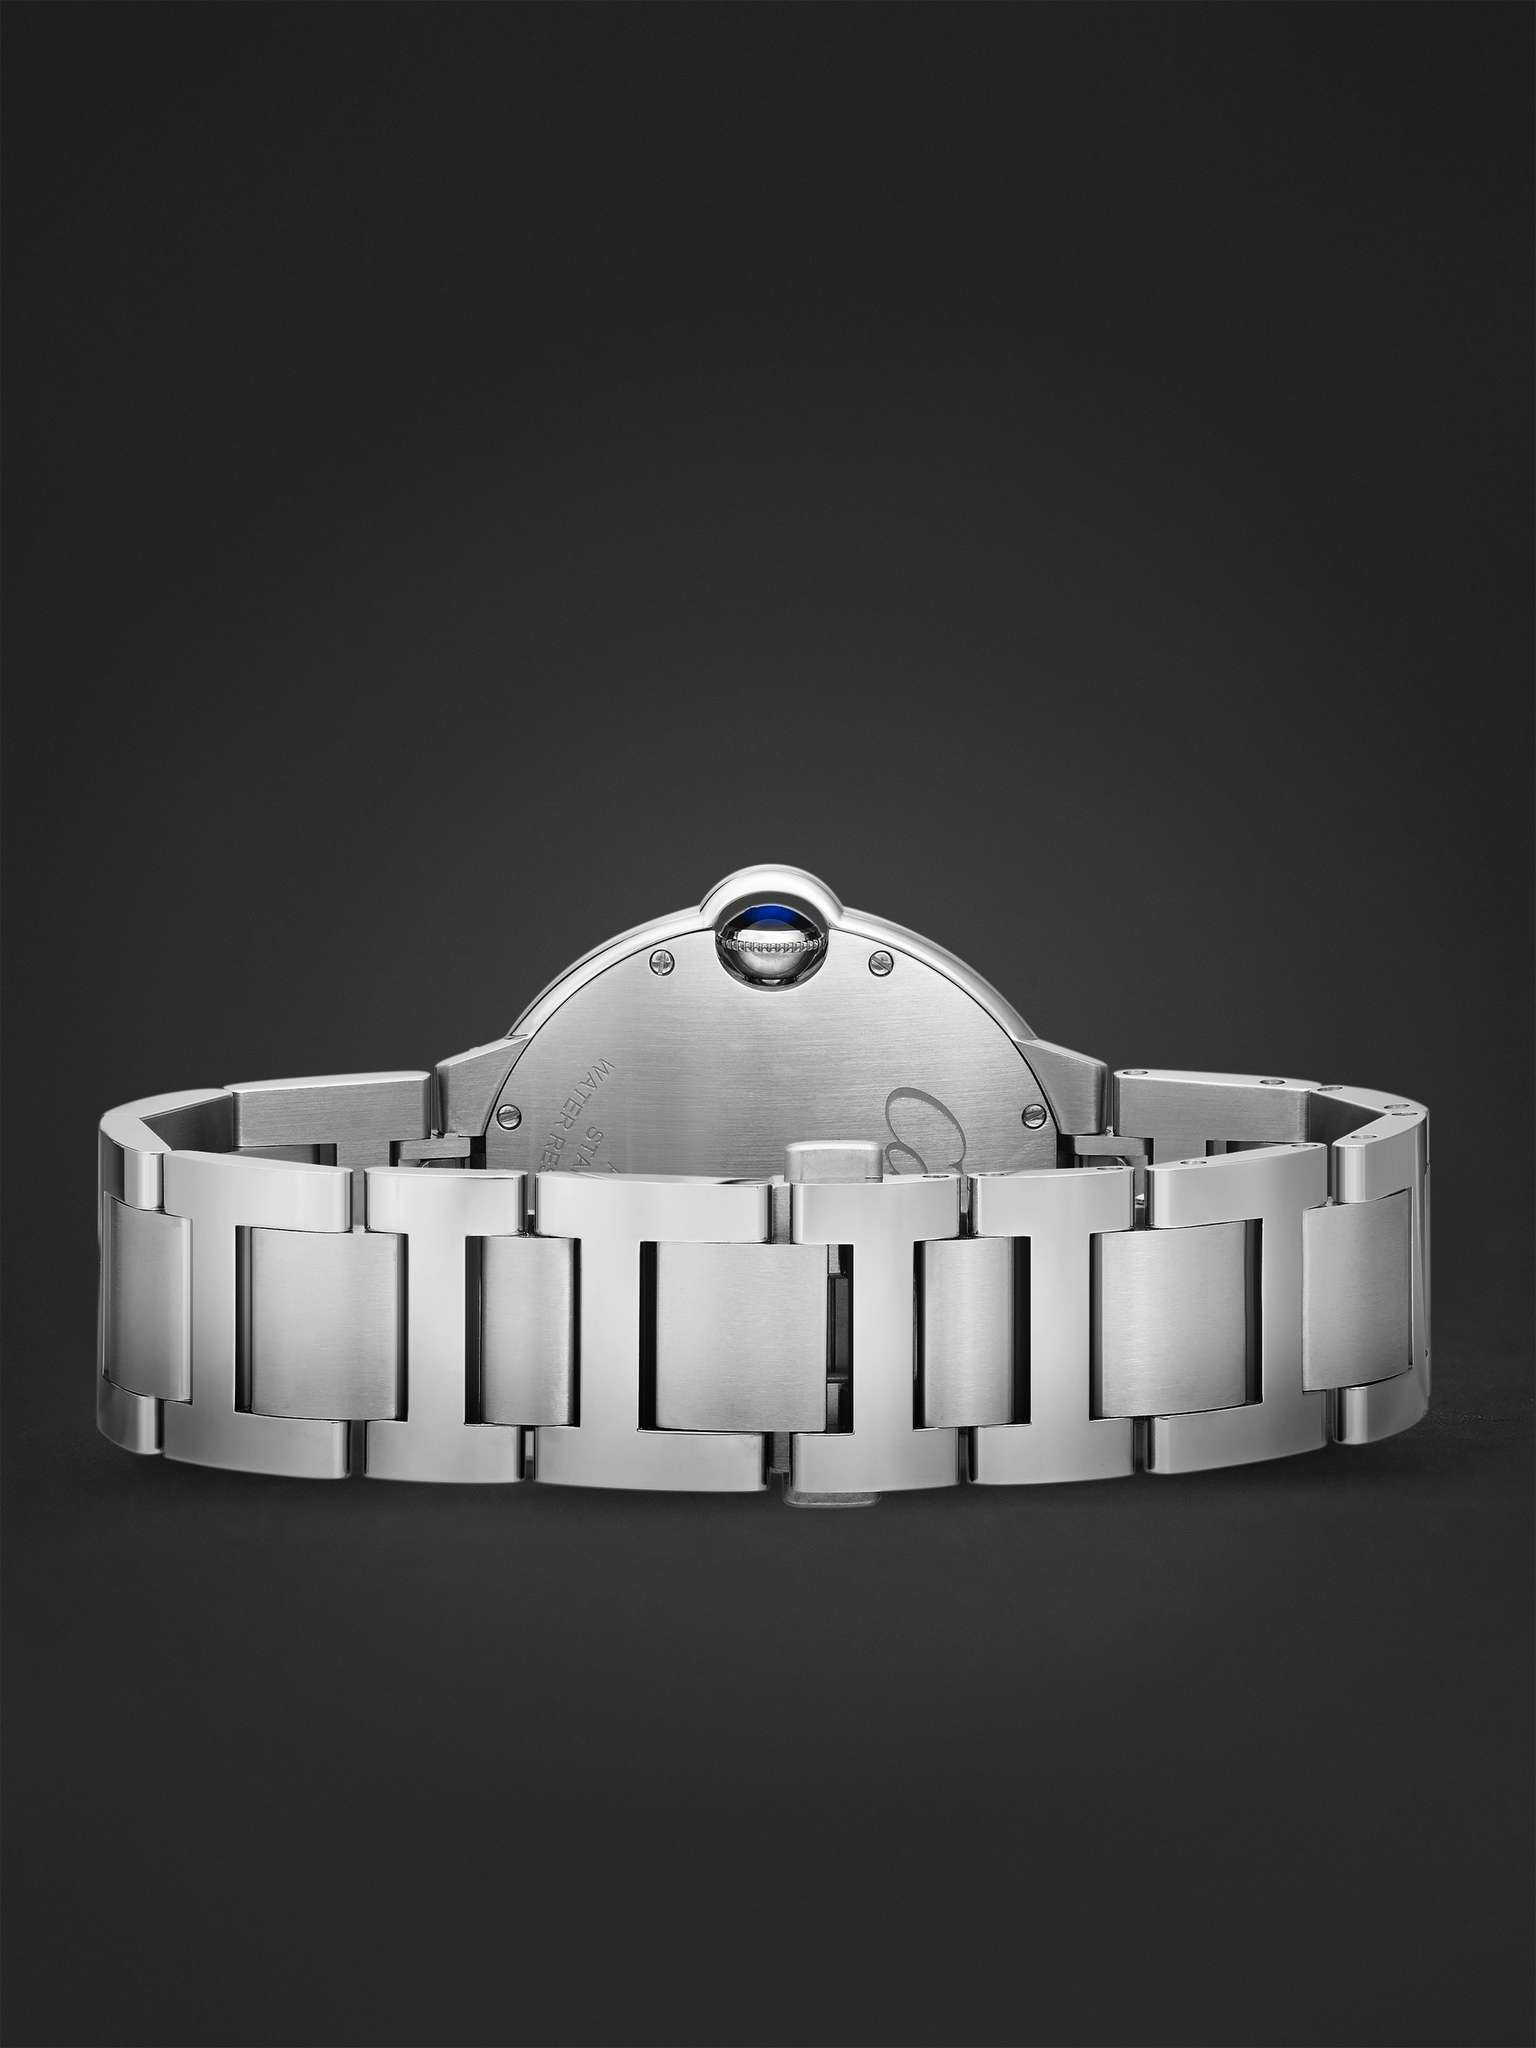 Ballon Bleu de Cartier Automatic 40mm Stainless Steel Watch, Ref. No. WSBB0060 - 6